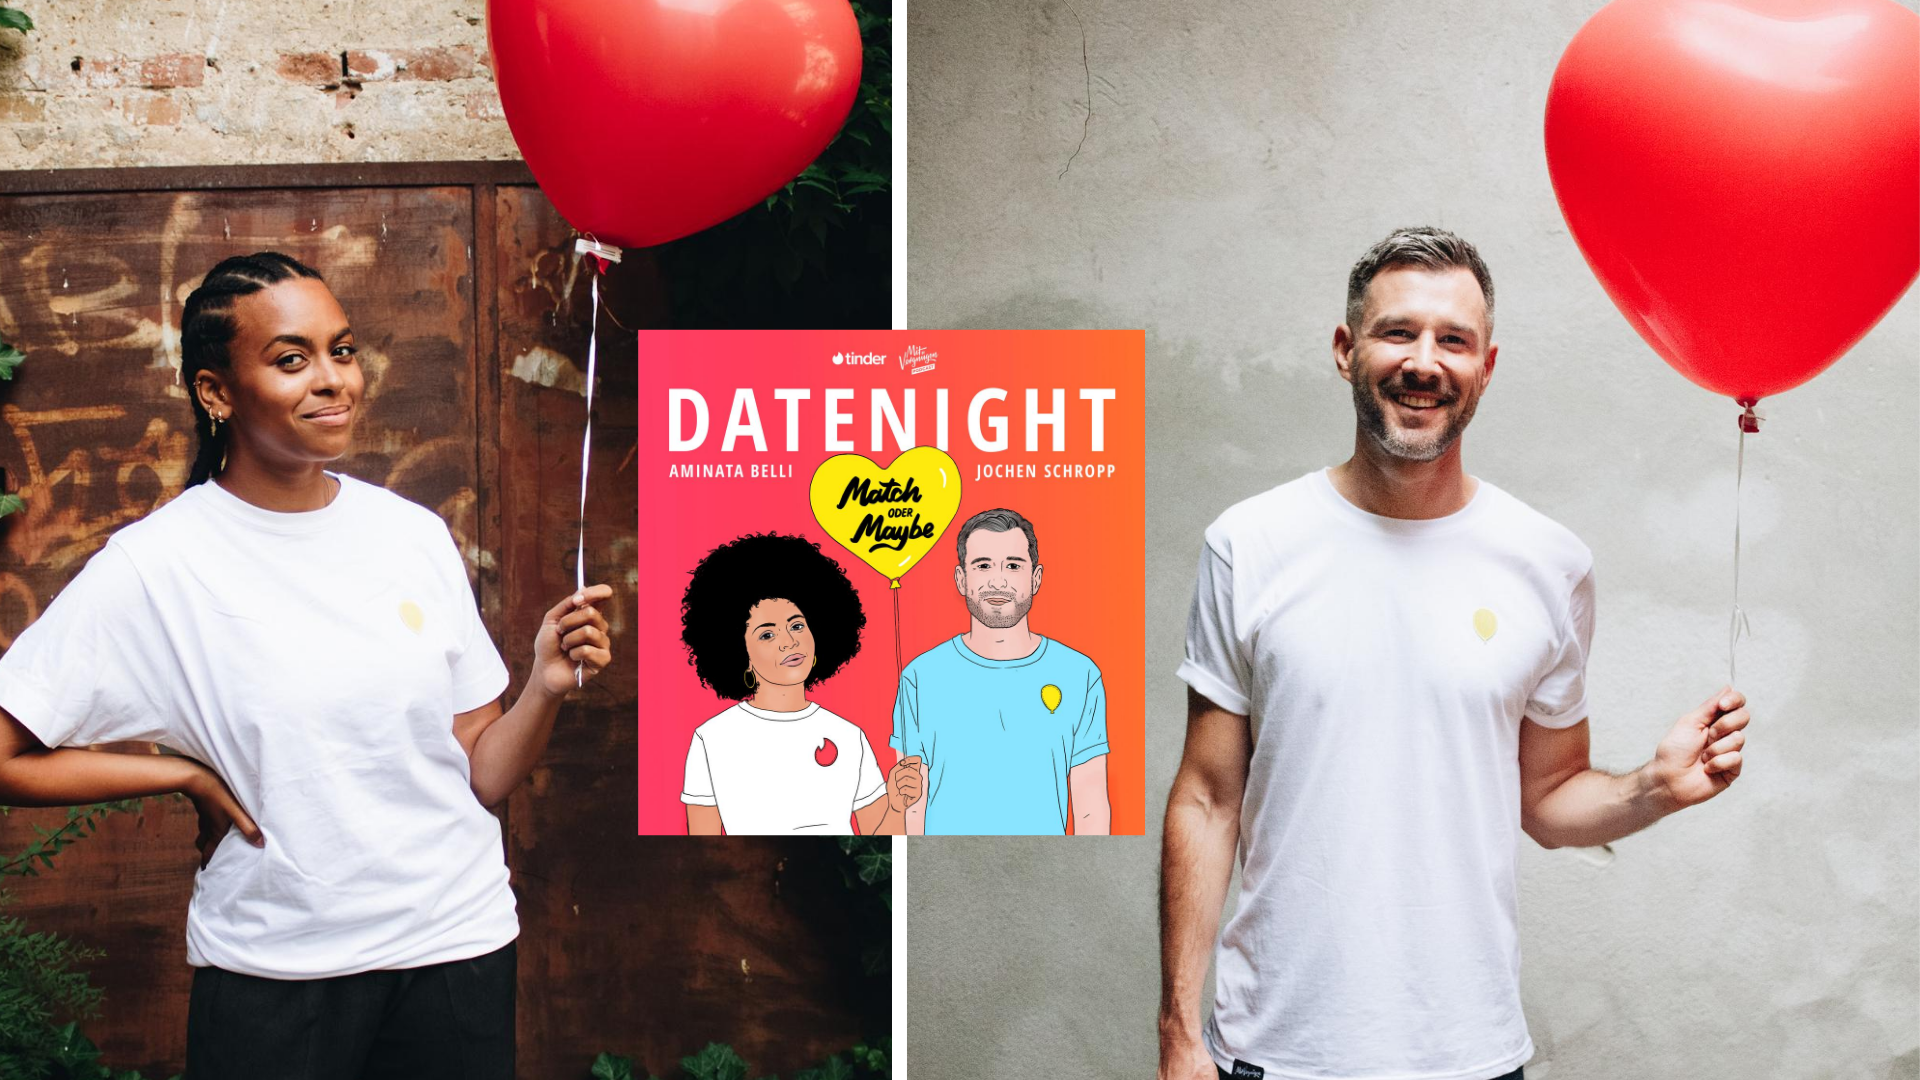 tinder podcast mit vergnügen datiung erstes date blind date liebe